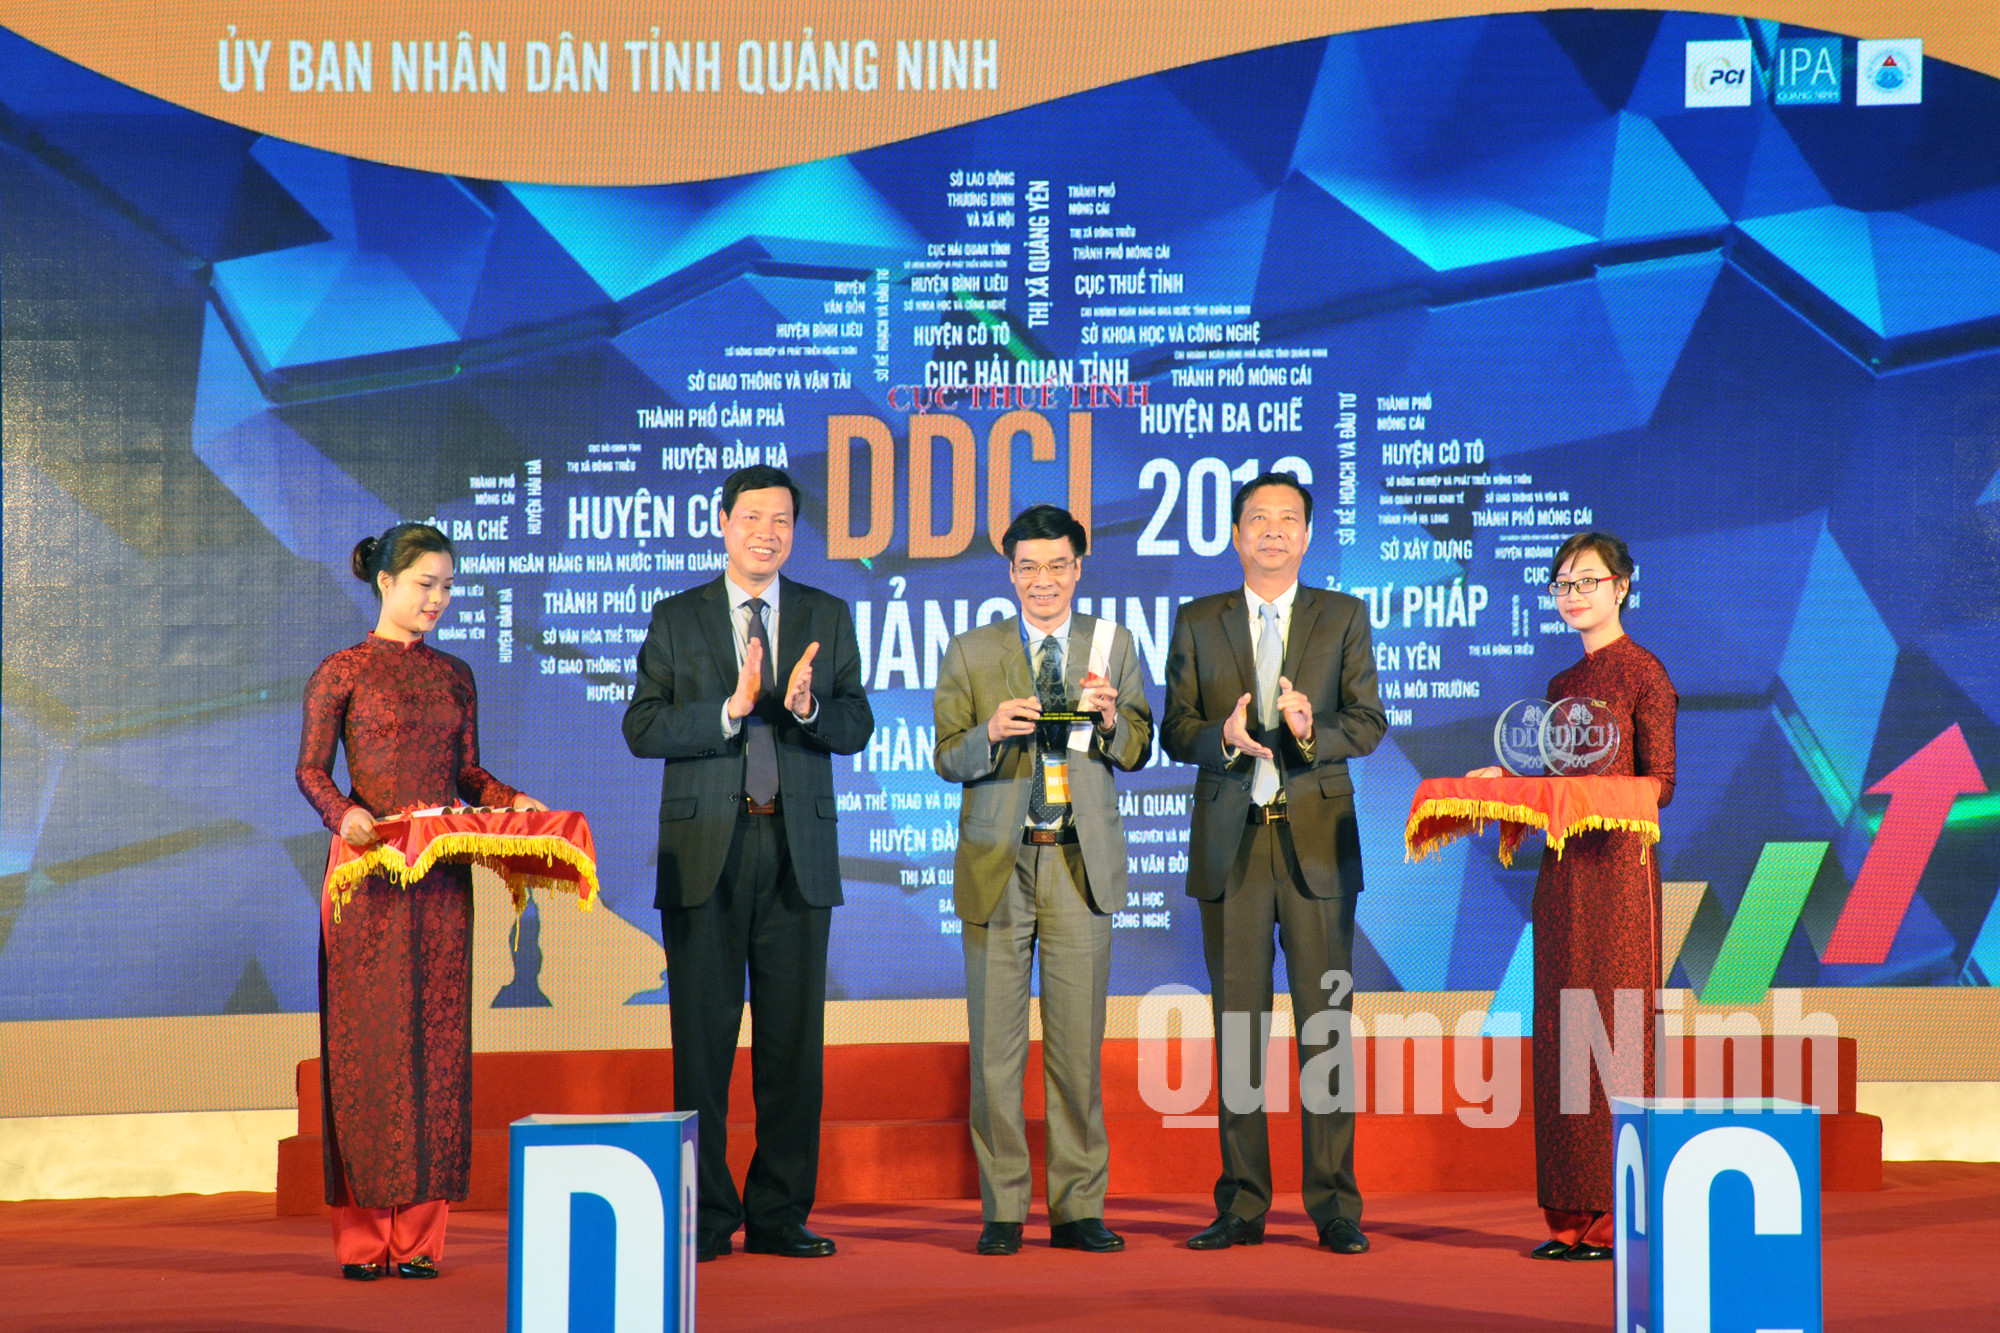 Cục thuế Quảng Ninh đứng đầu trong bảng xếp hạng DDCI 2016 khối các sở ban ngành.